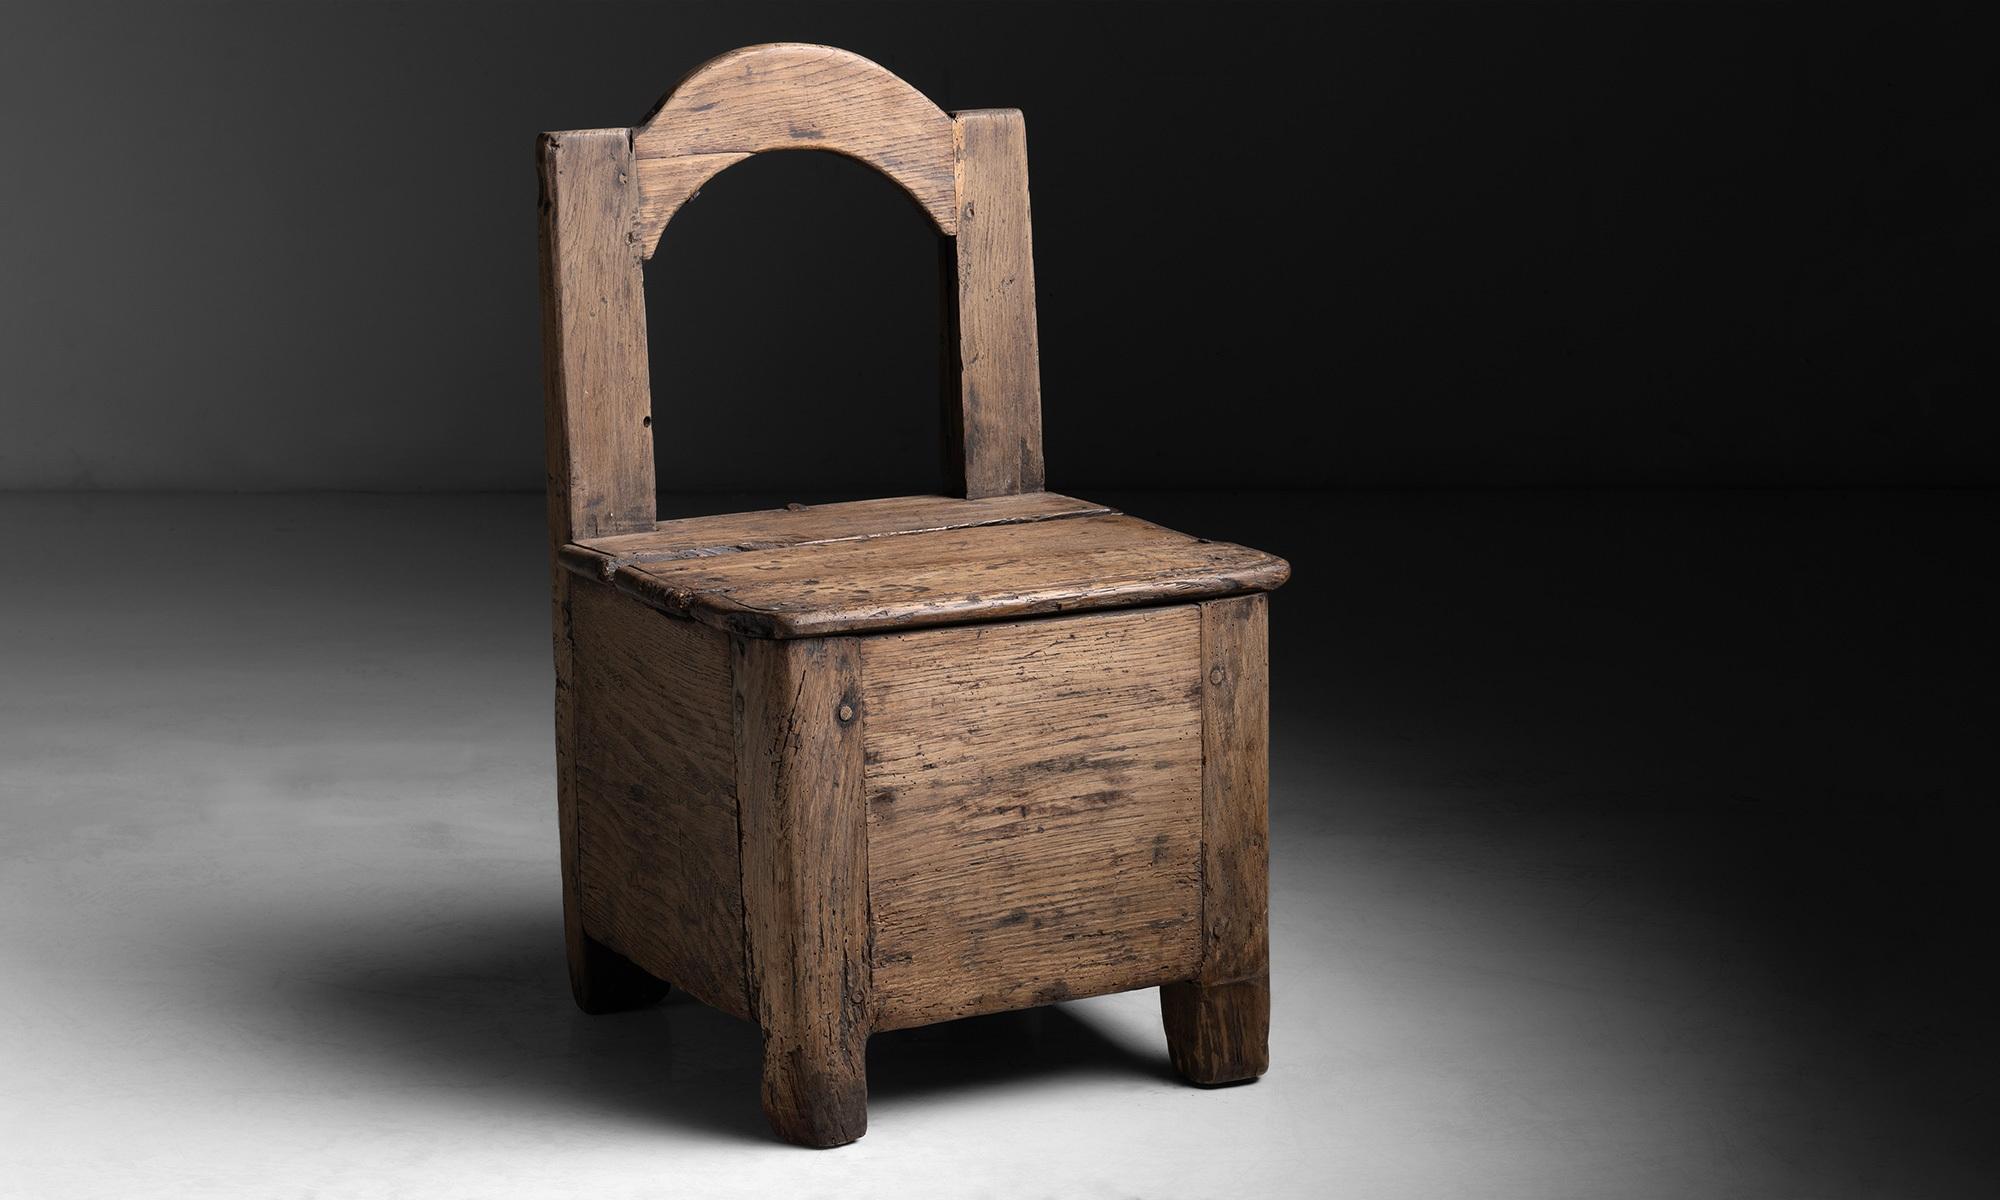 Primitive oak chair

France circa 1880

Measures: 18.5” L x 17” D x 30.75h” H x 16”seat.